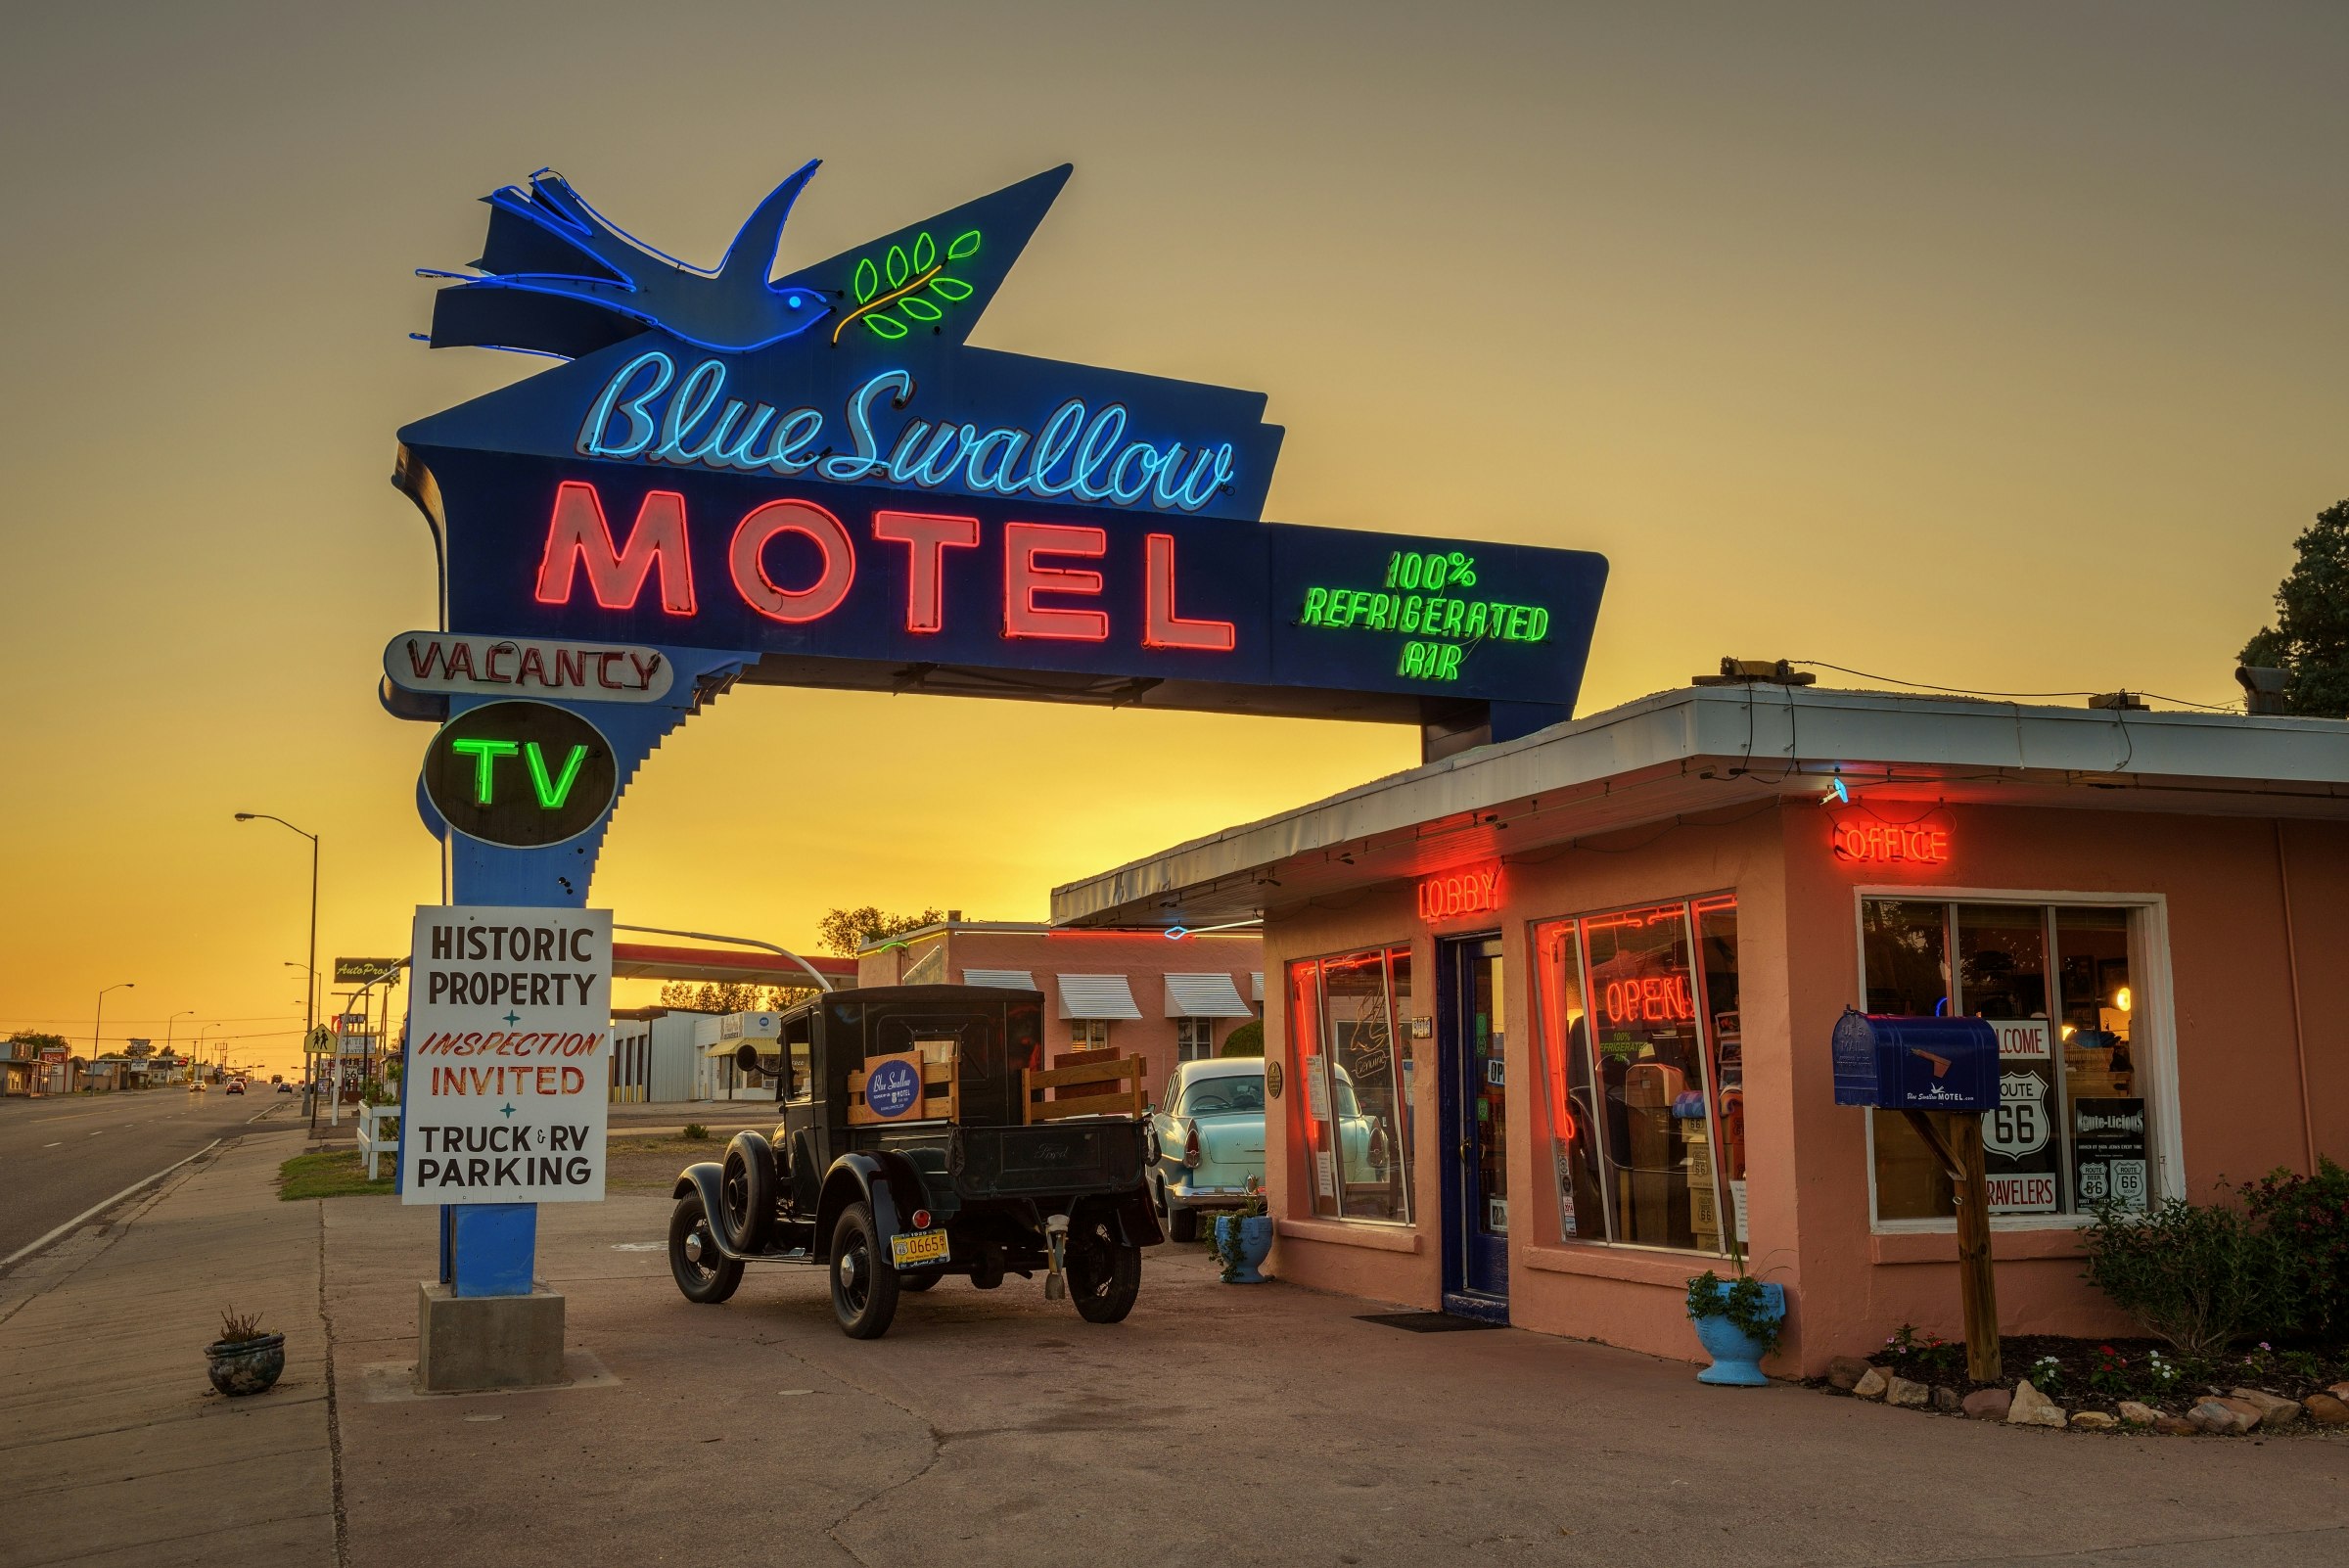 En exteriör bild av Blue Swallow Motel i New Mexico.  Motellet är litet men har en stor neonskylt som lockar bilisters uppmärksamhet, som kör längs motorvägen bredvid motellet.